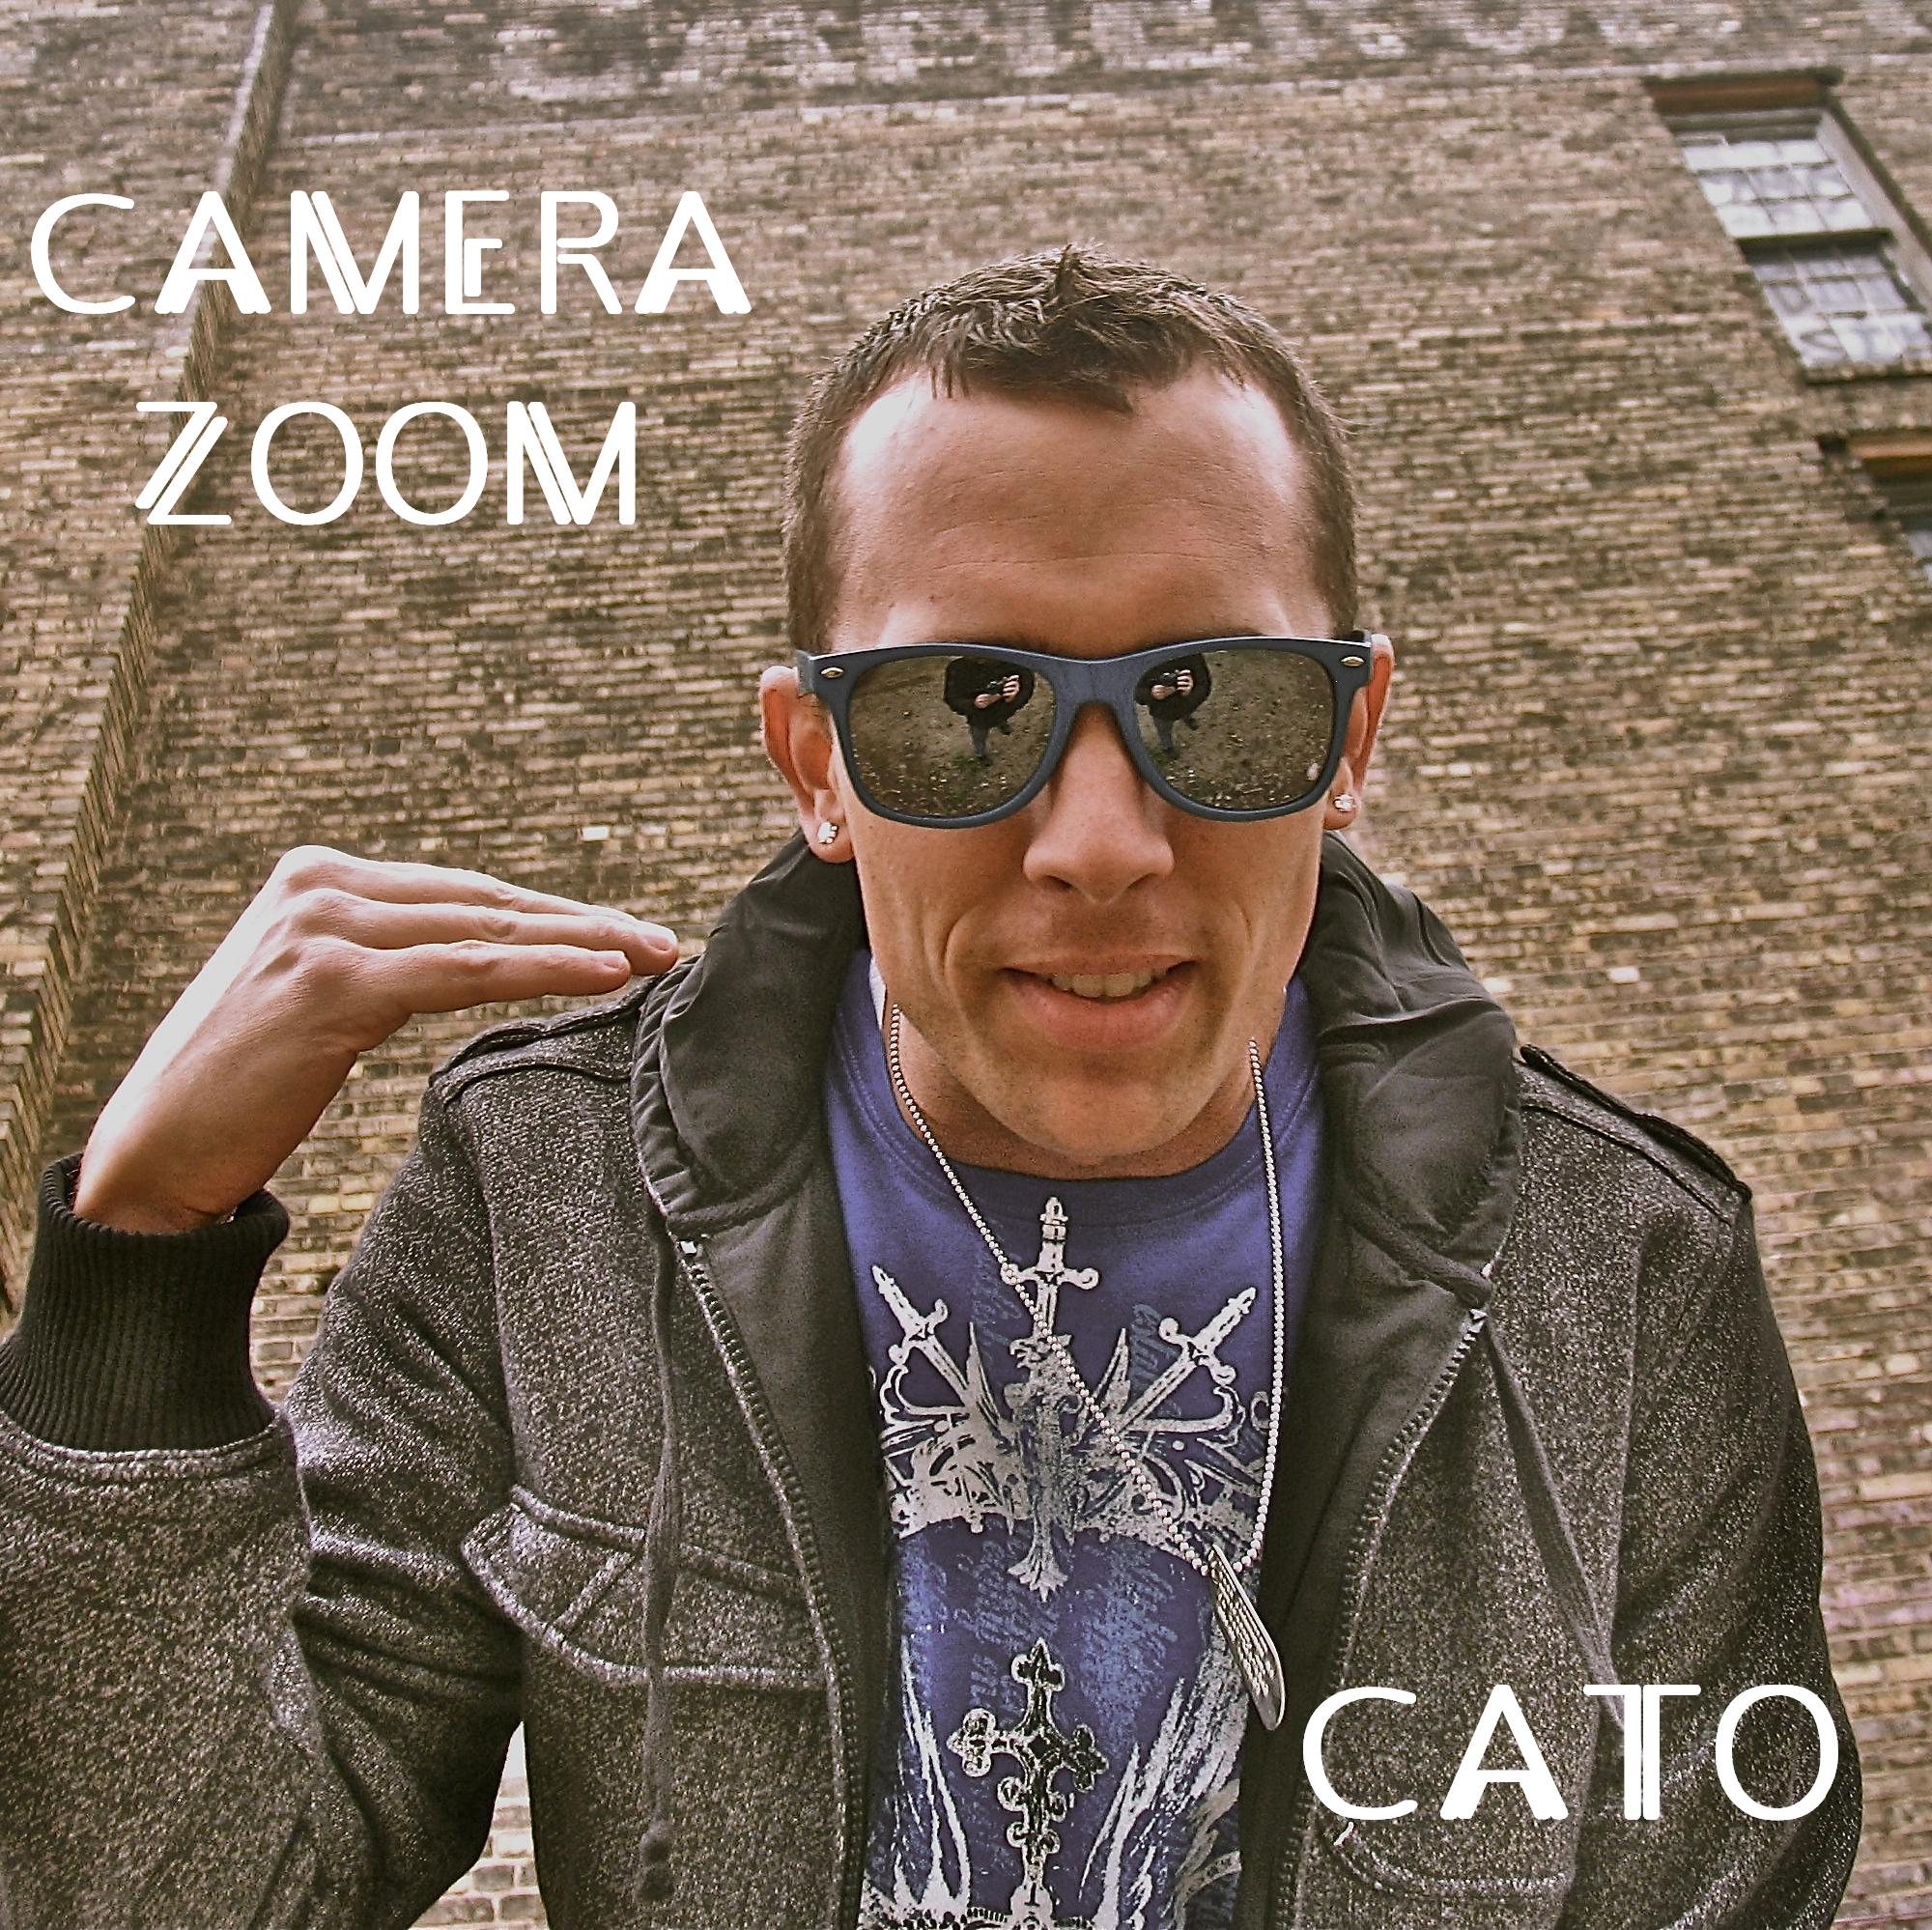 Cato – Camera Zoom